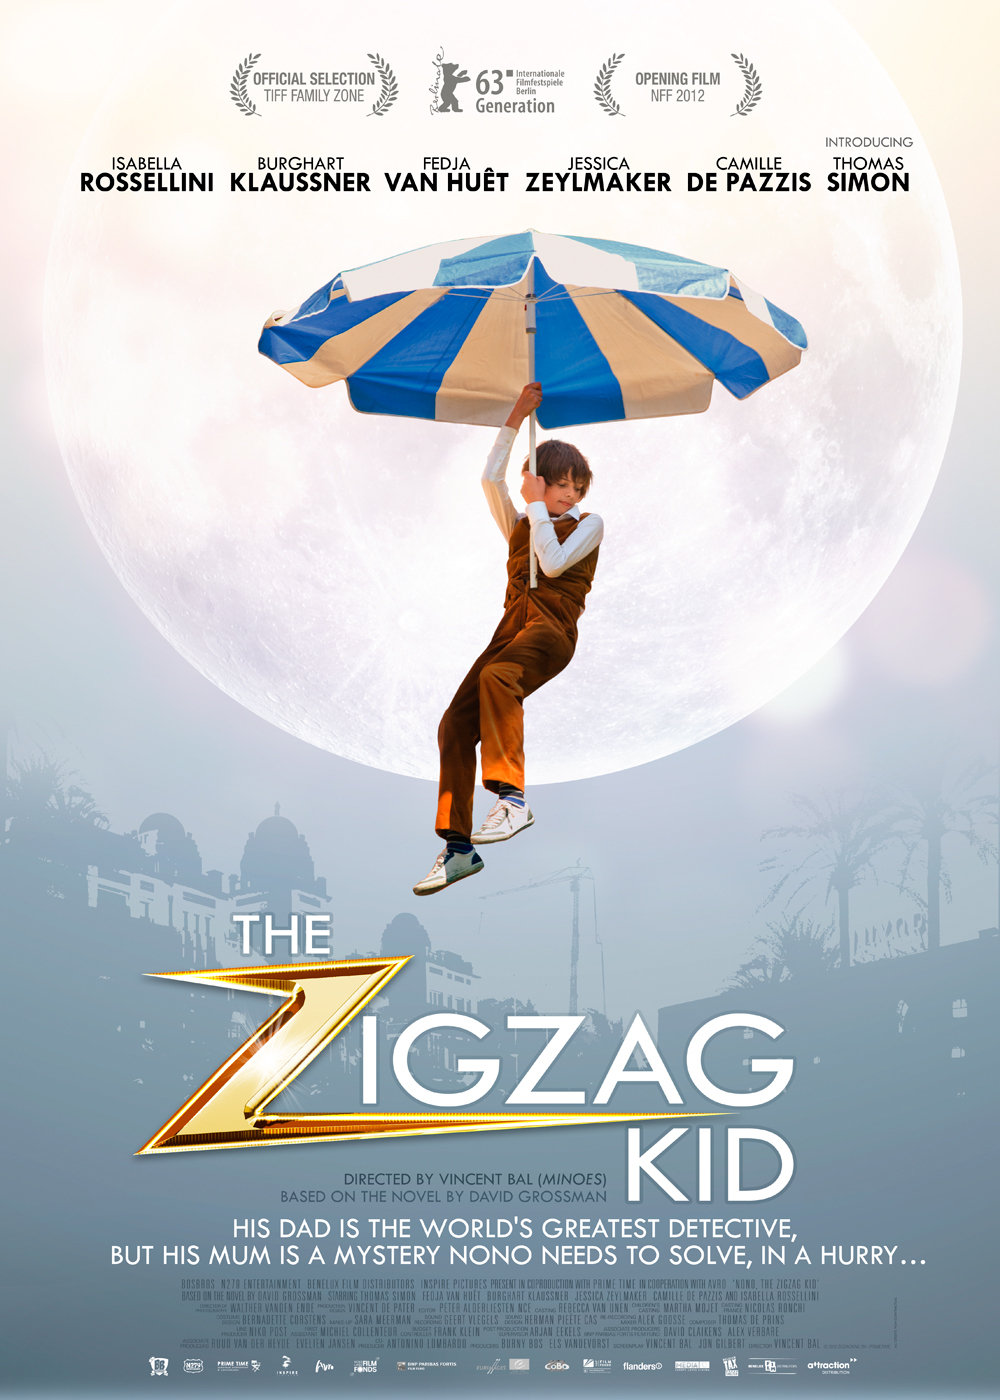 The Zigzag Kid (2012) Screenshot 1